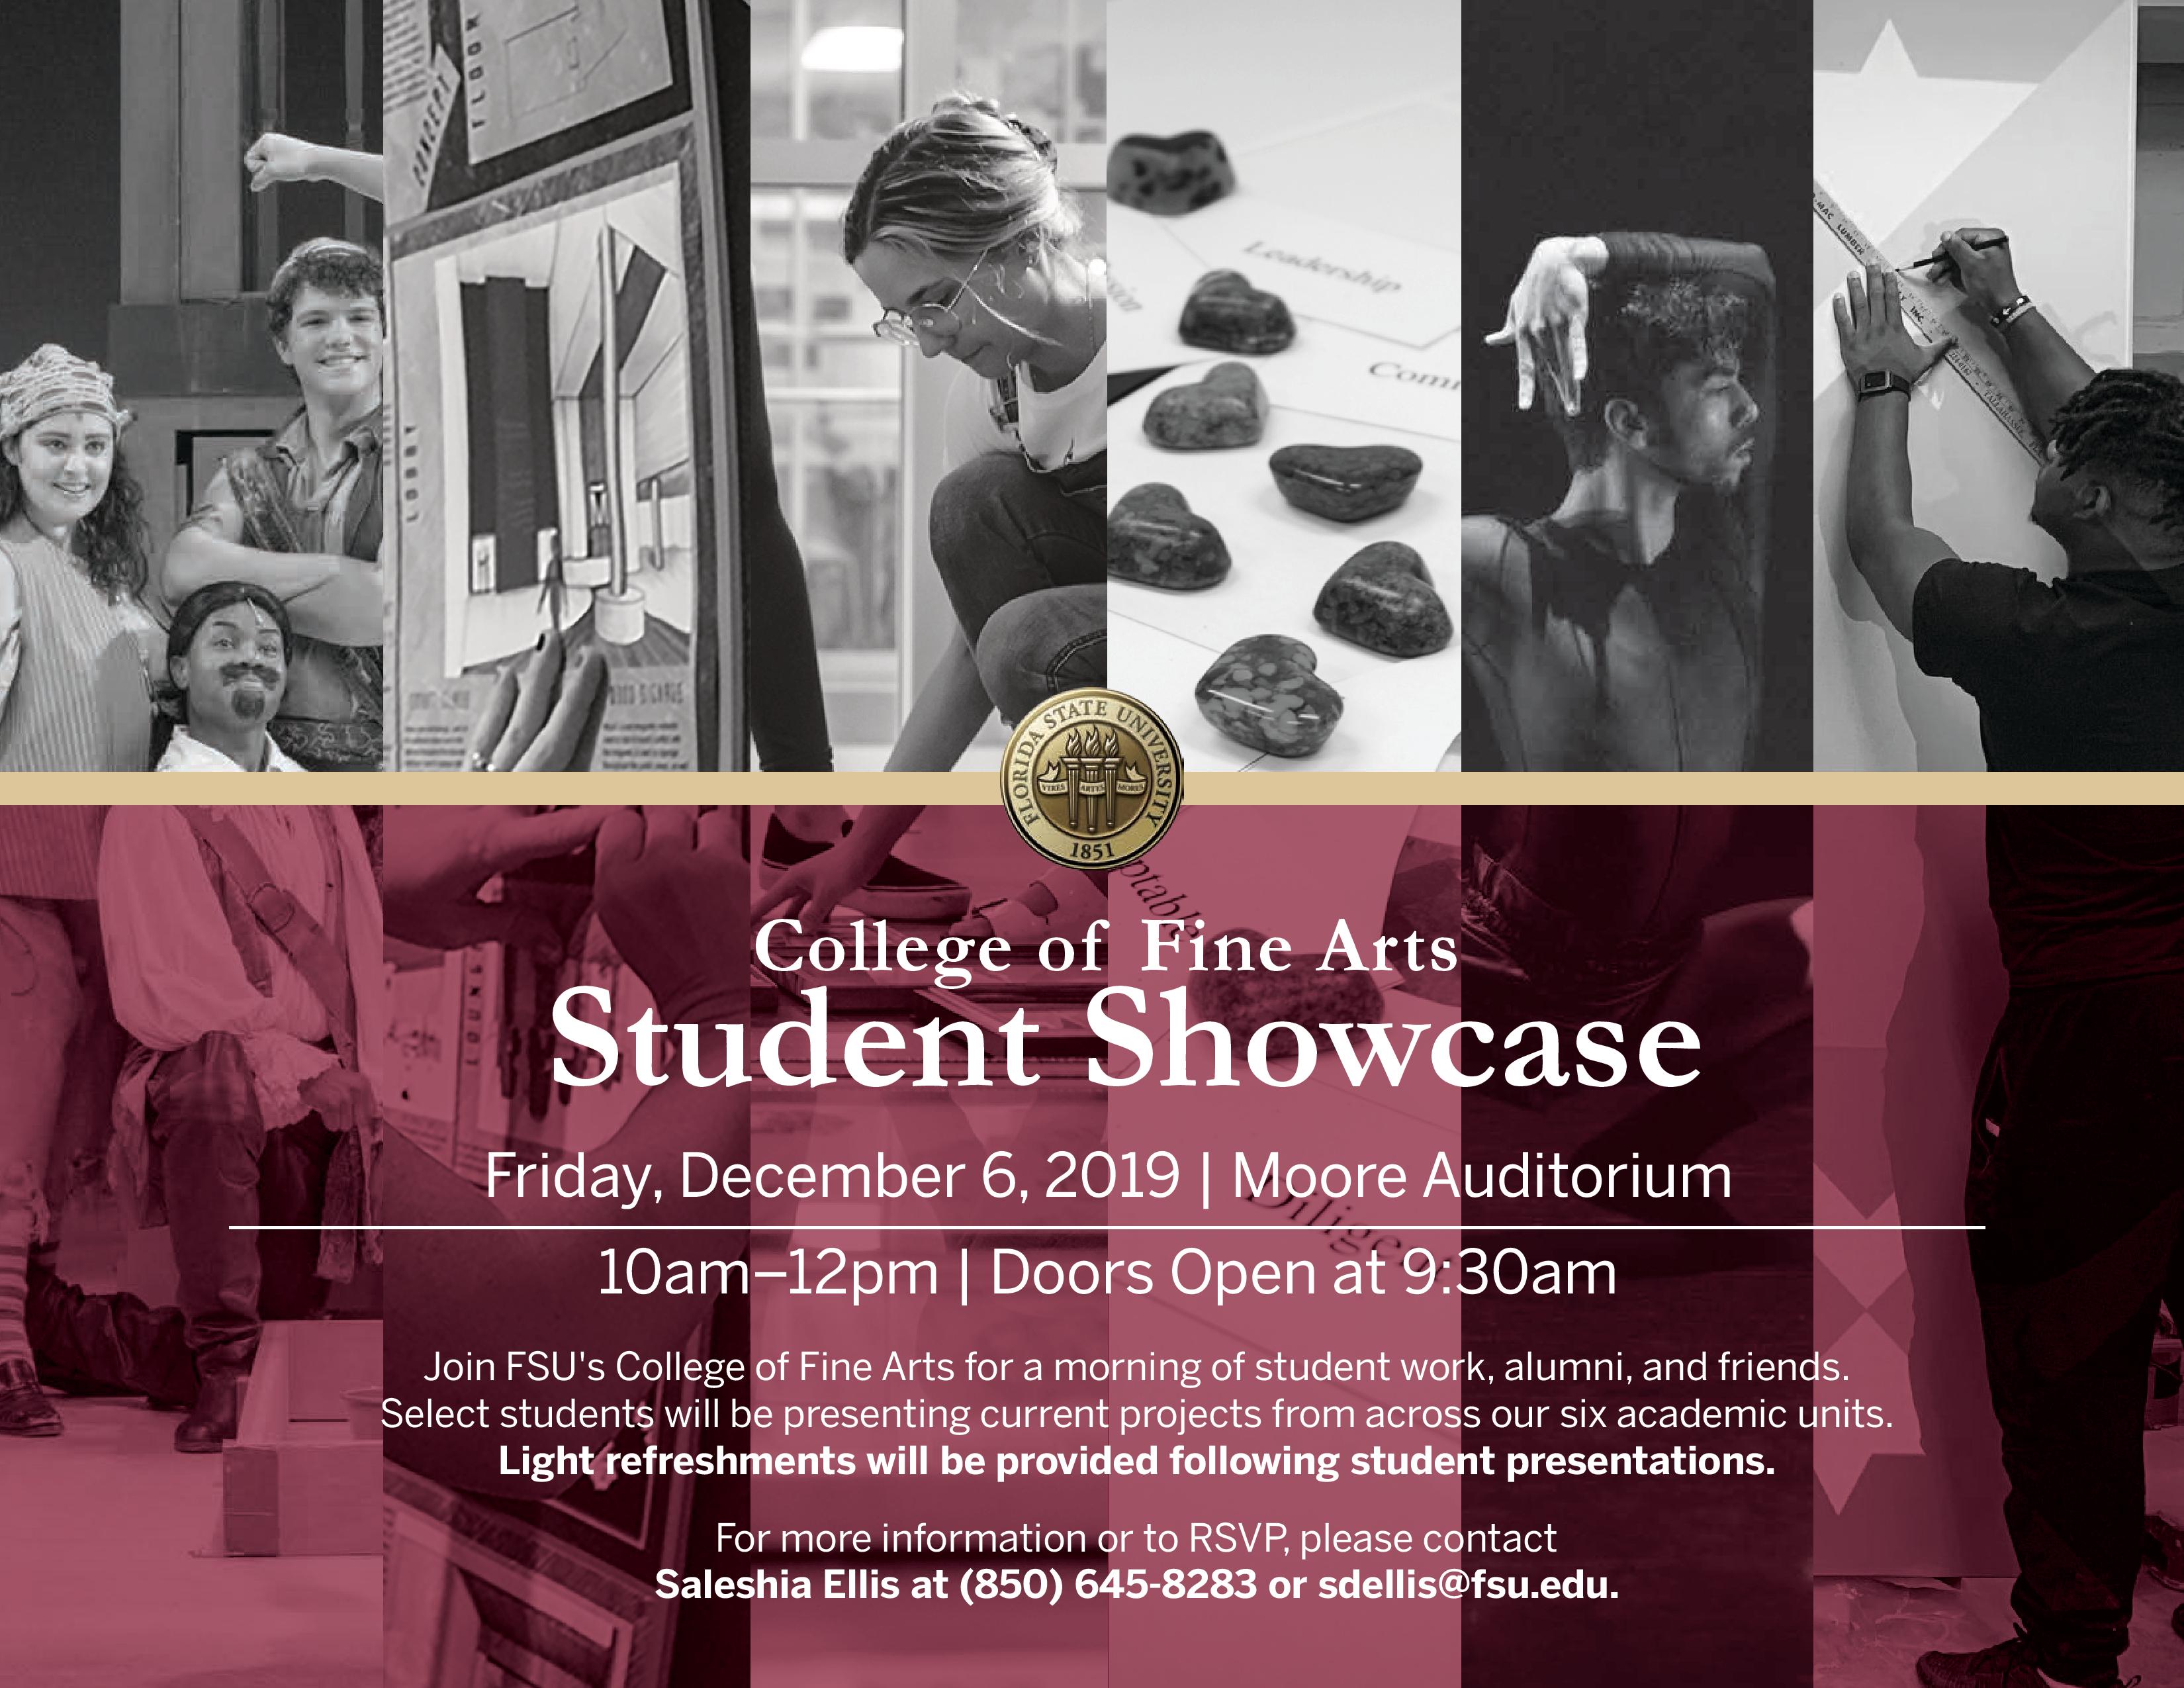 College of Fine Arts Student Showcase